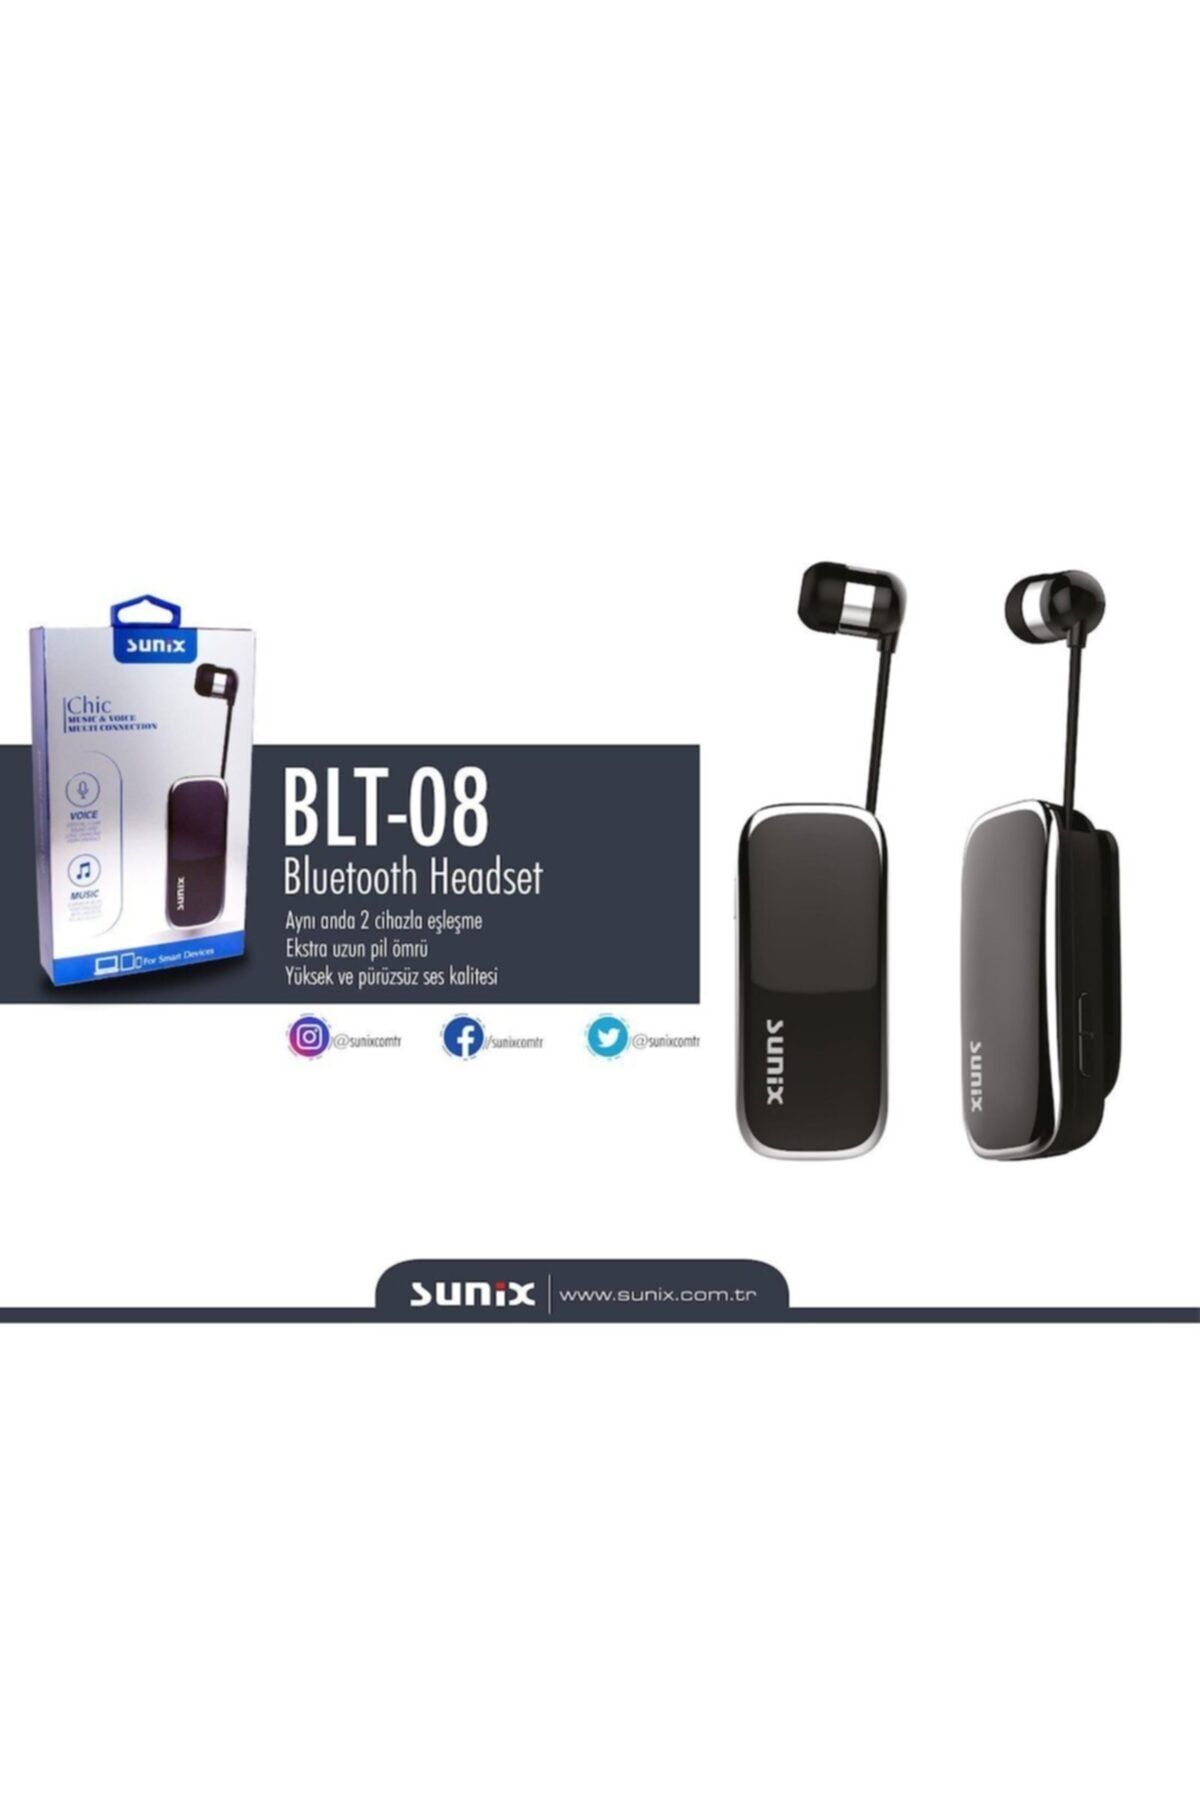 Sunix Blt-08 Makaralı Bluetooth Kulaklık